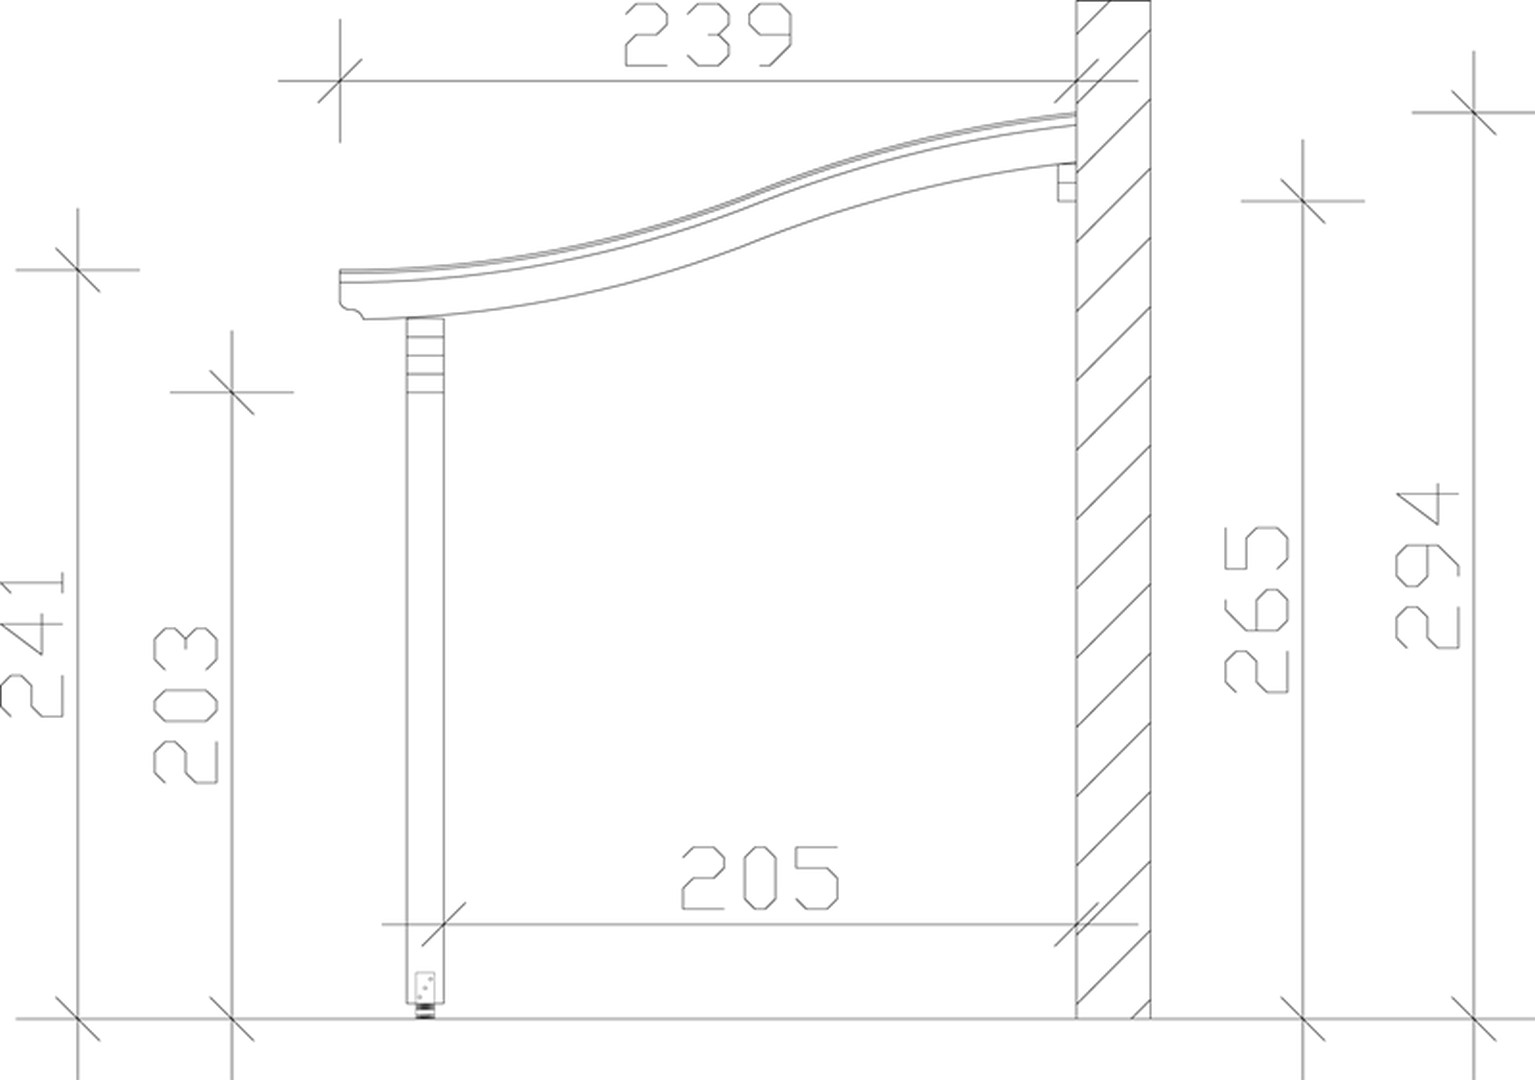 Skan Holz Terrassenüberdachung Verona 648 x 239 cm, Leimholz, Doppelstegplatten